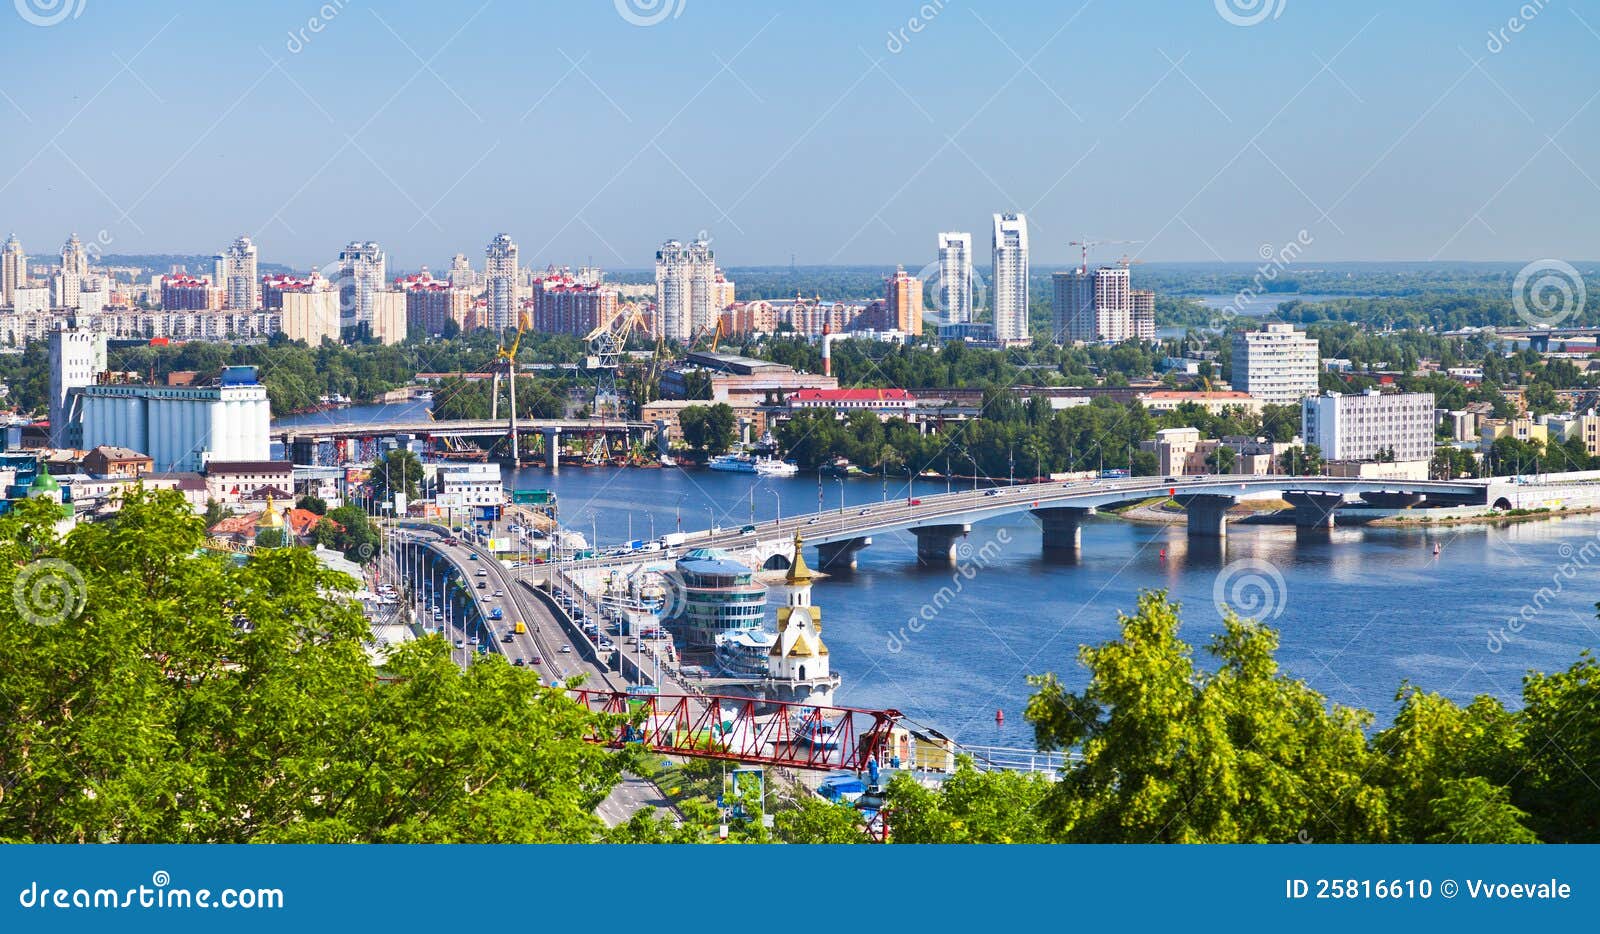 kiev cityscape and dnieper river